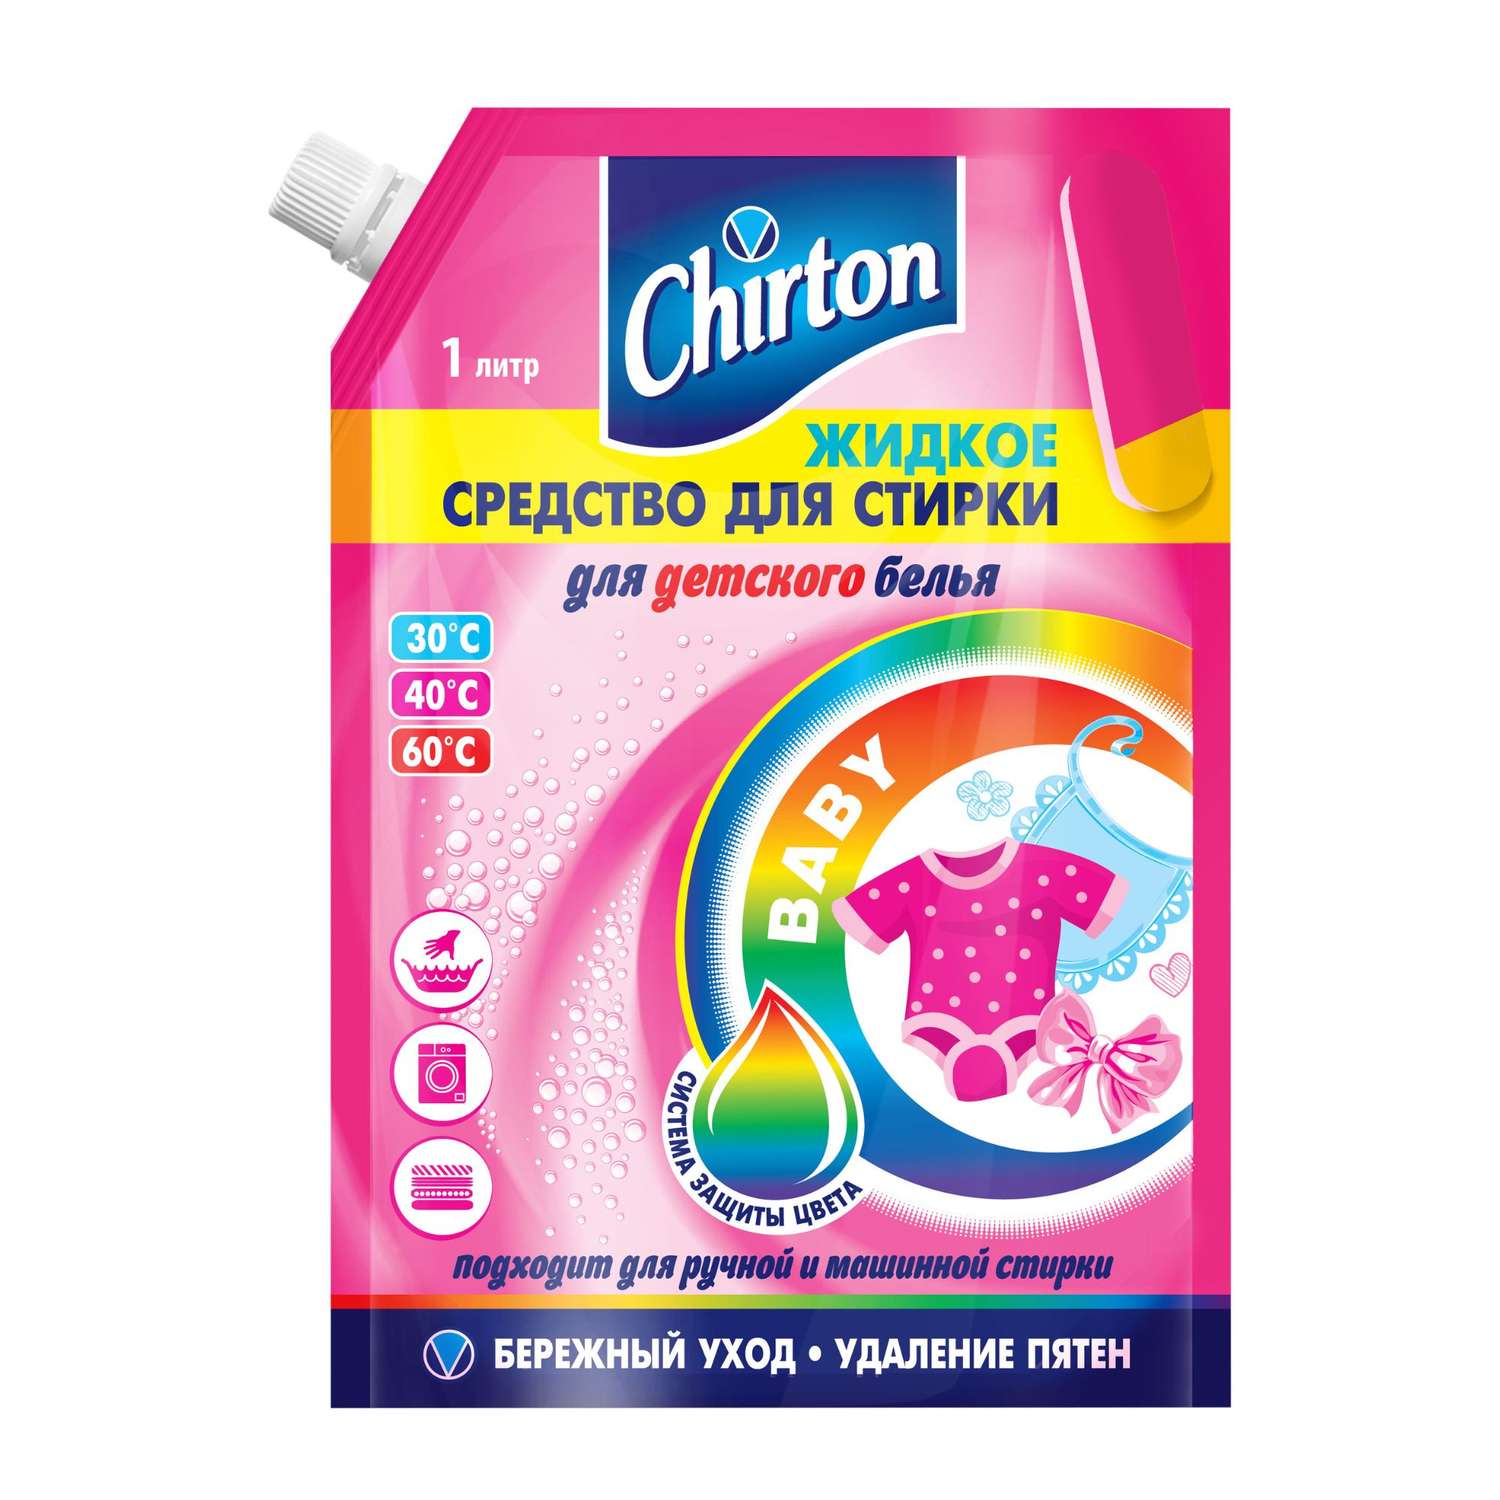 Жидкое средство Chirton для стирки детского белья 1000 мл - фото 1